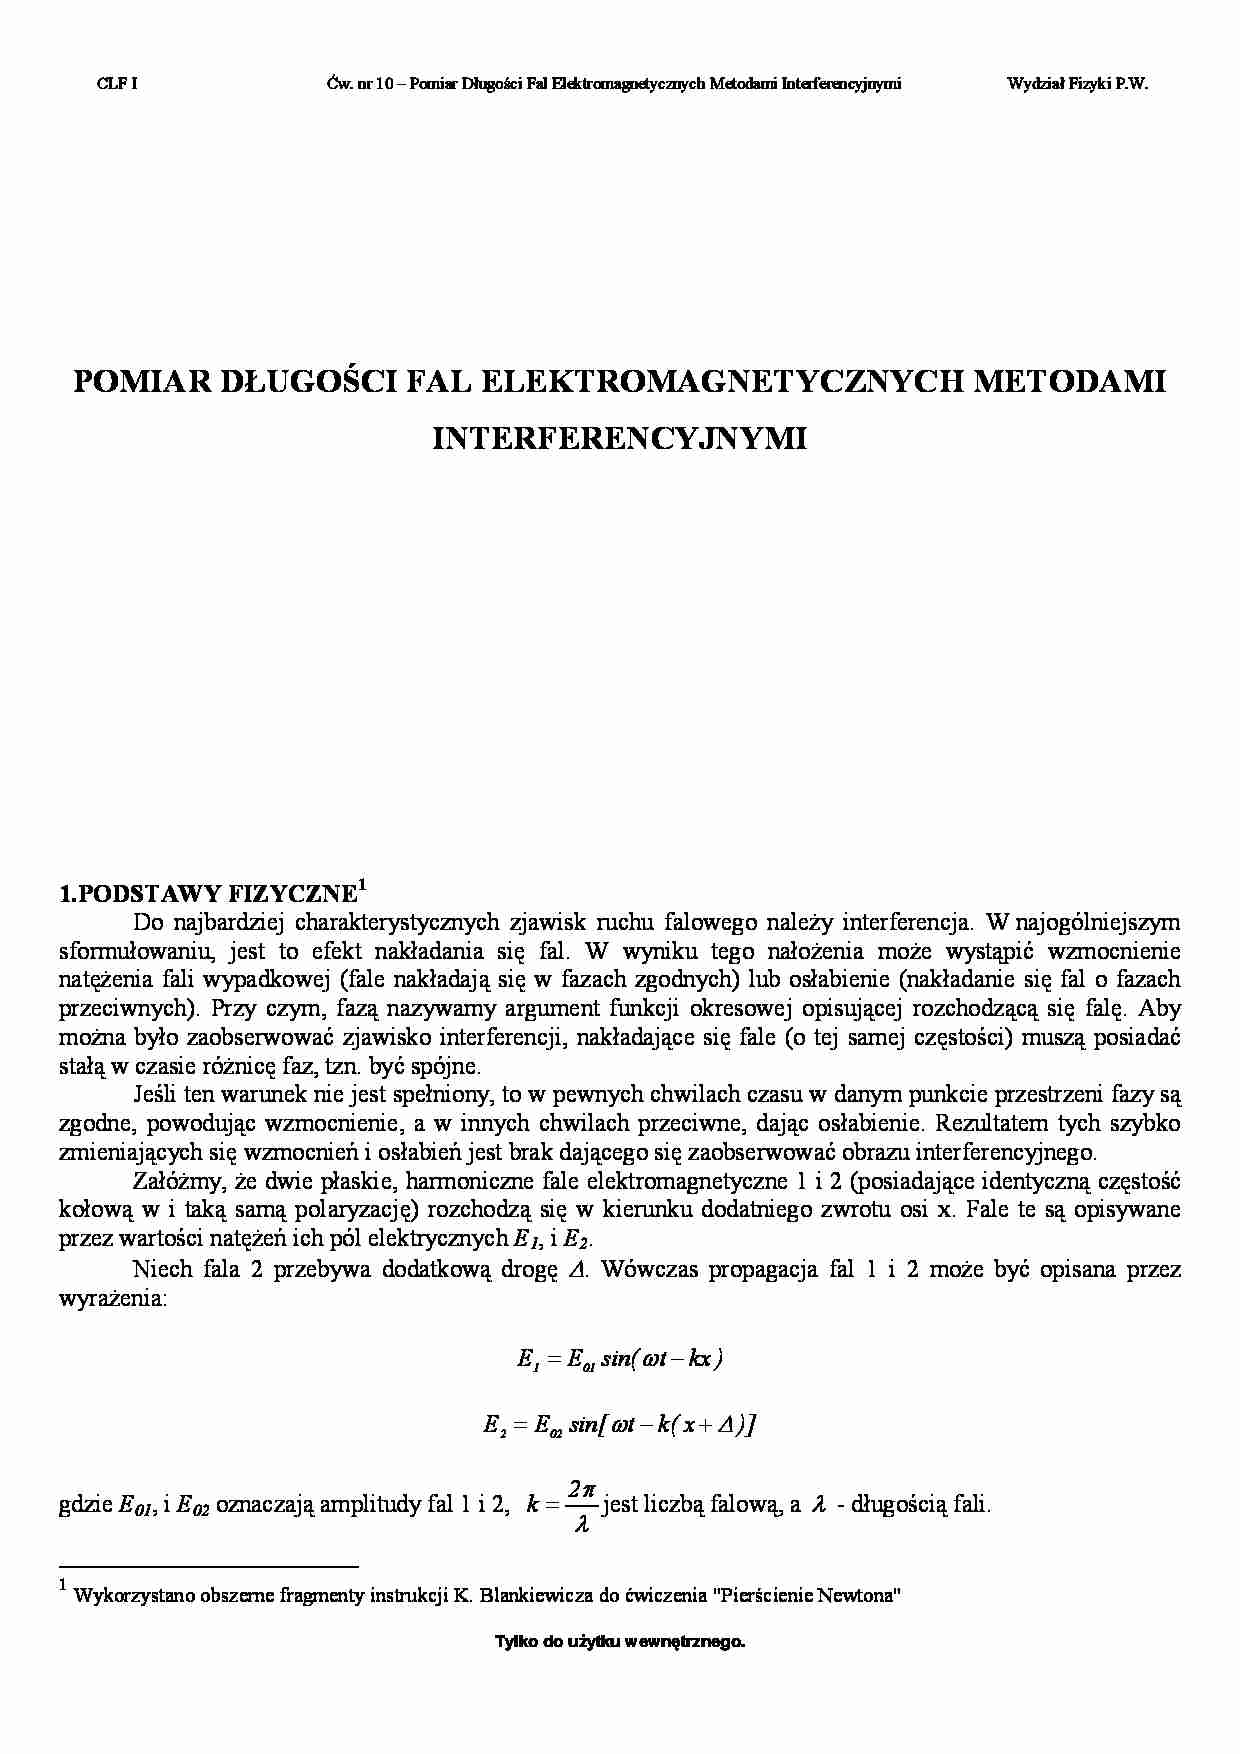 Pomiar długości fal elektromagnetycznych metodami interferencyjnymi - strona 1